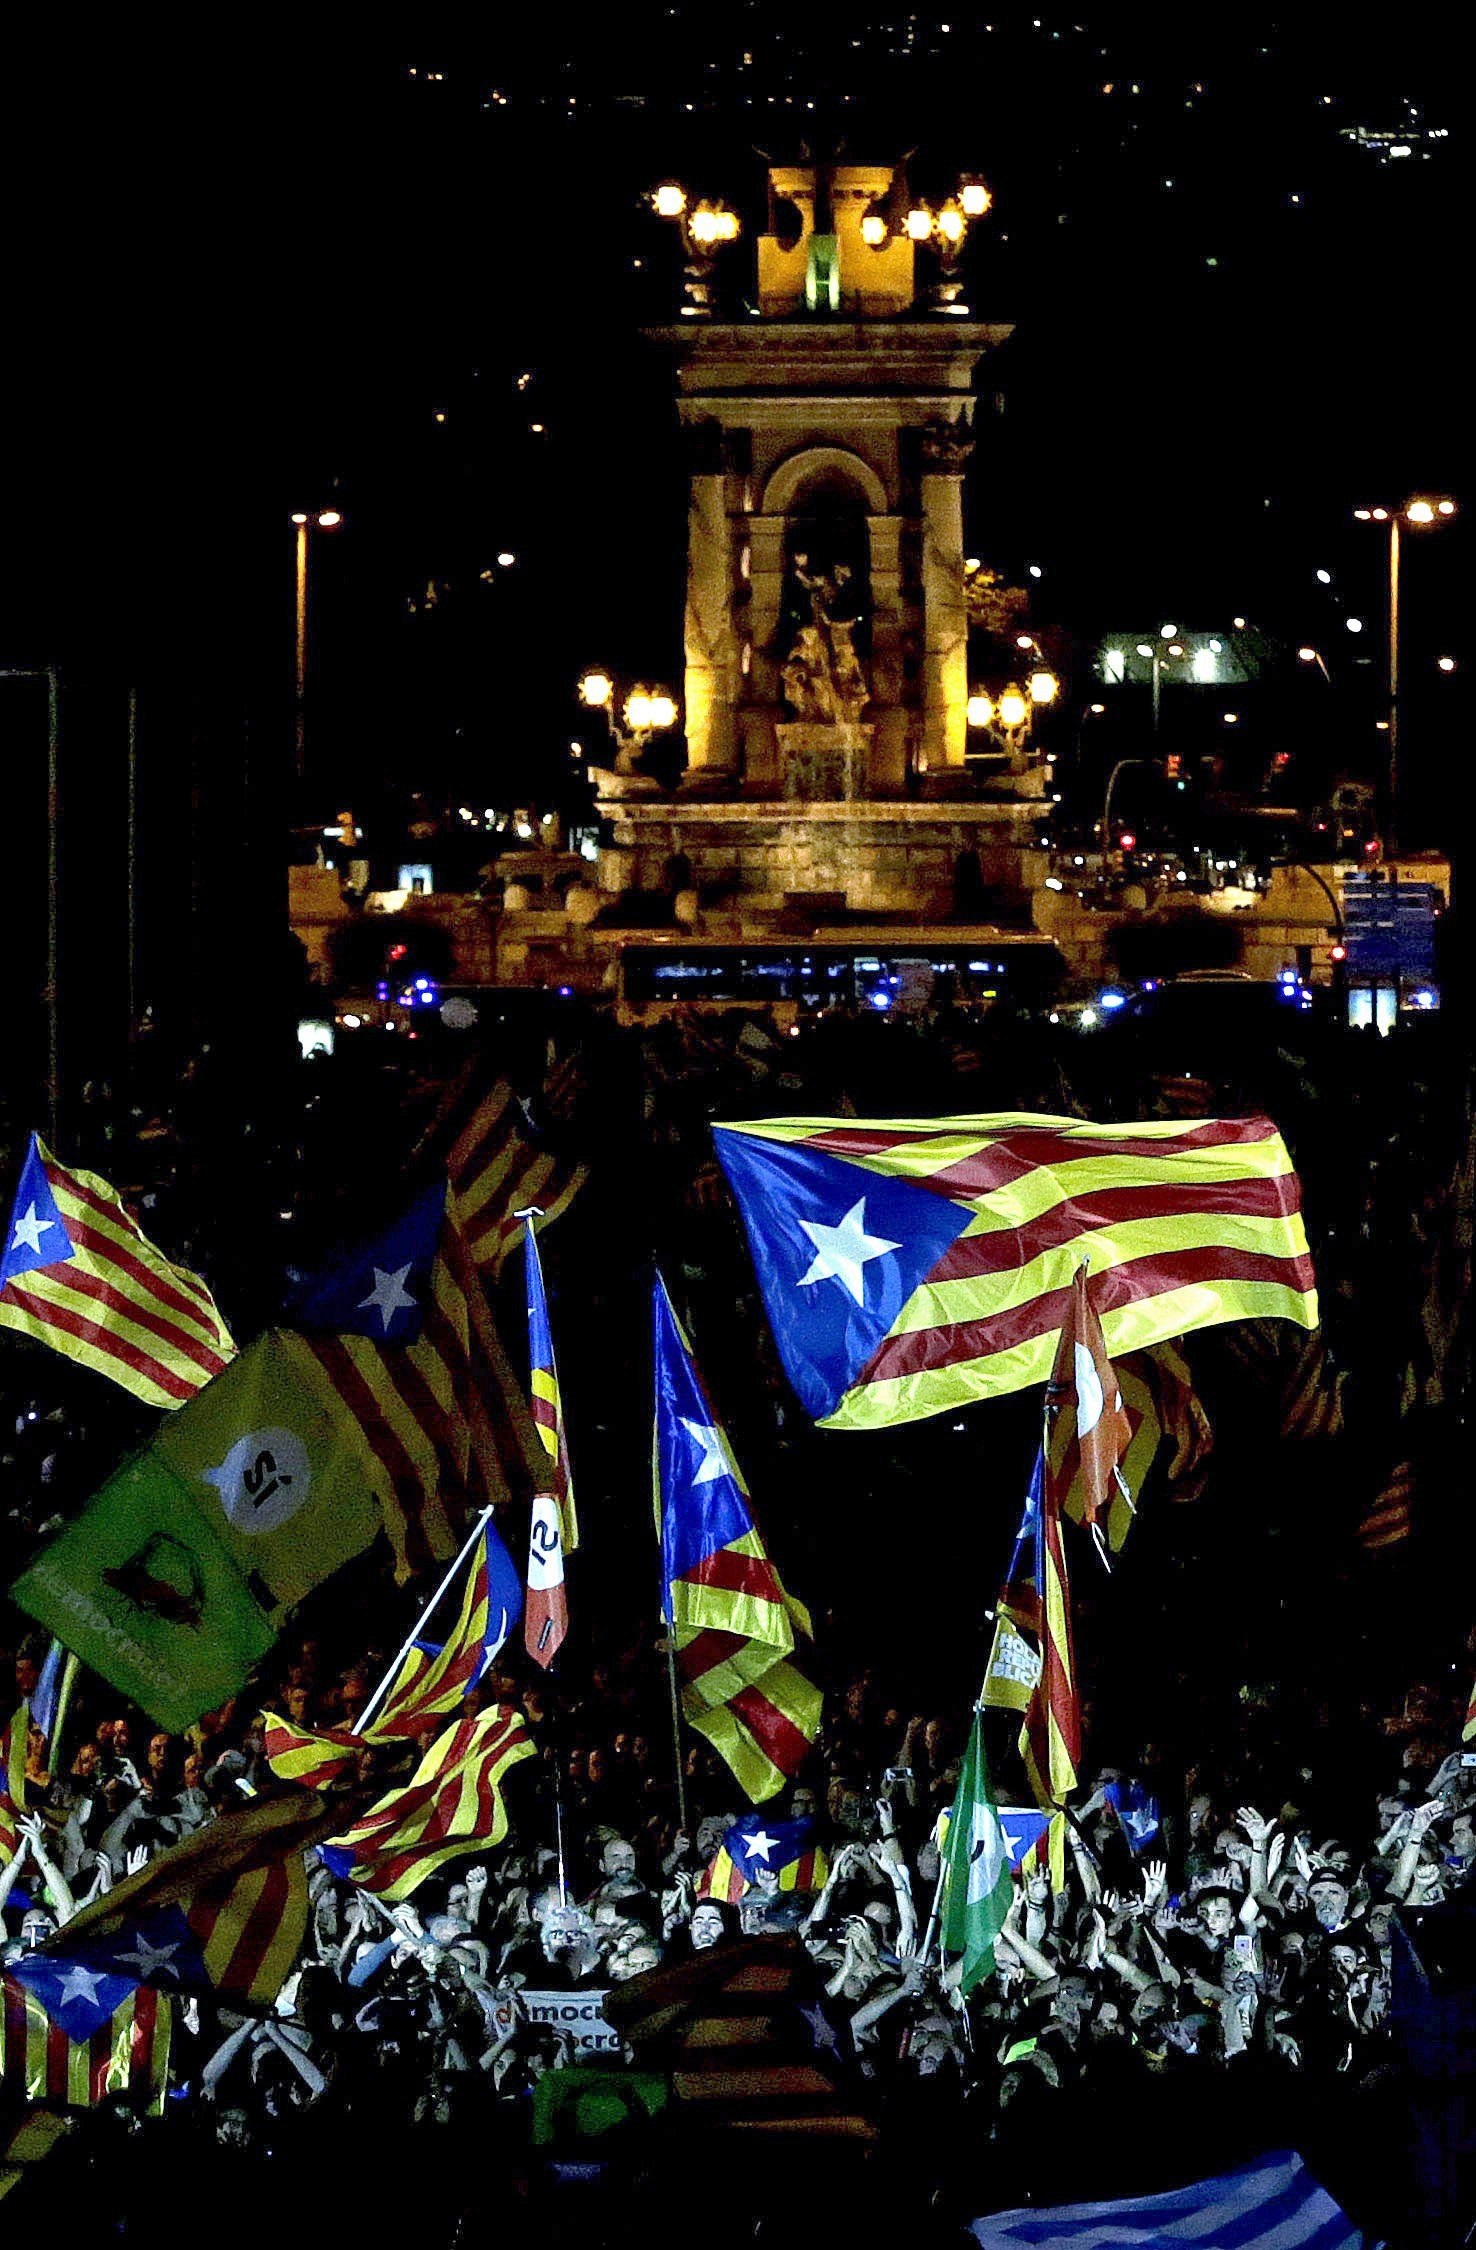 От съдебни битки до шумни улични демонстрации - борбата за провеждането на референдум за независимост в Каталуния е безмилостно жестока. Кулминацията трябва да е в неделя, за когато е насрочено допитването, въпреки опитите на правителството да осуети гласуването.